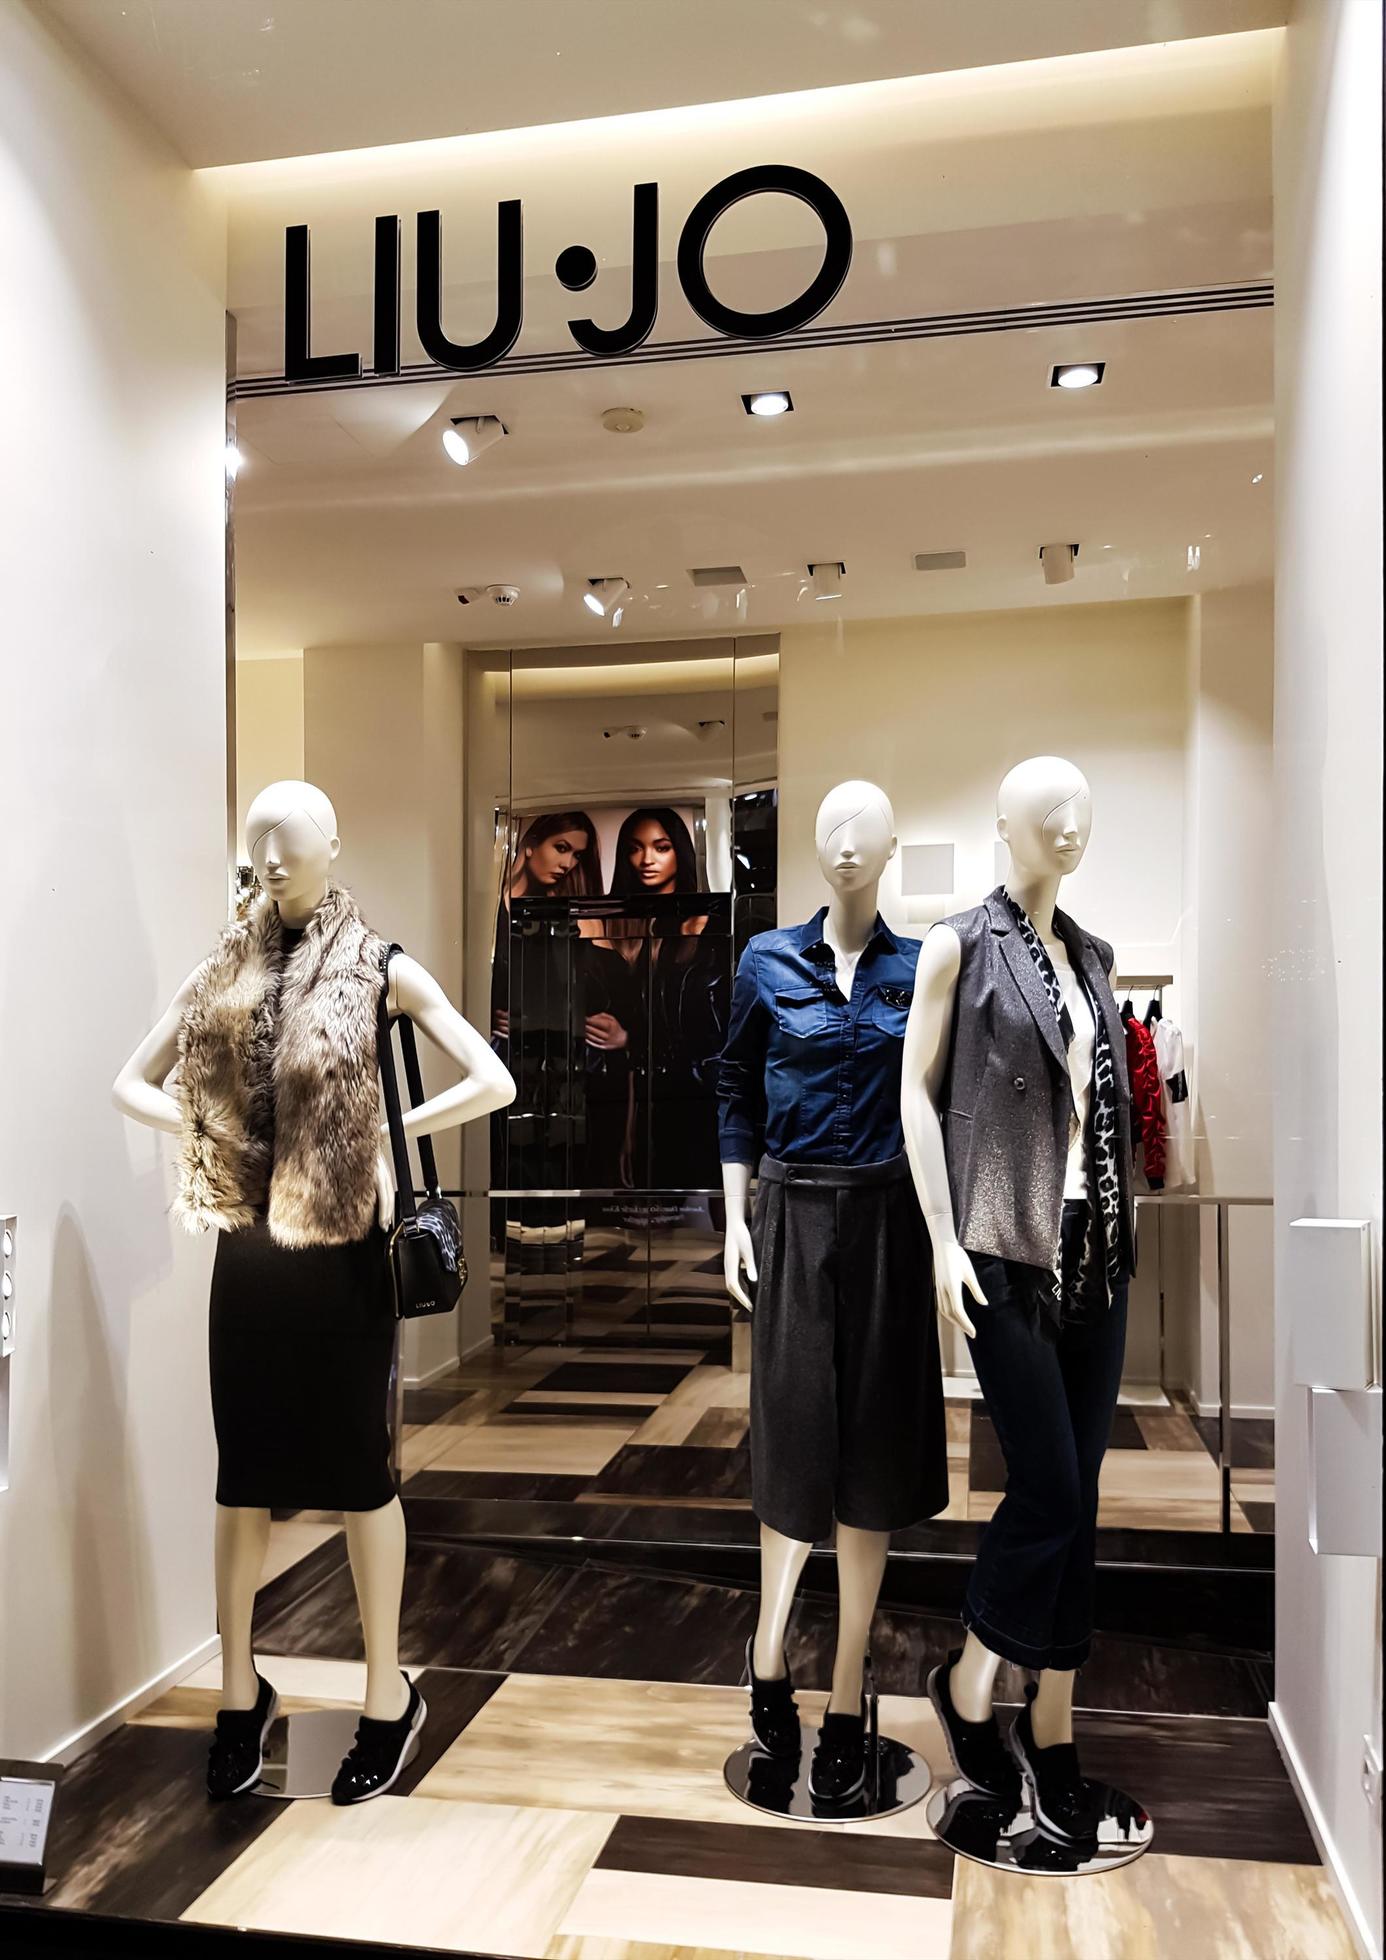 Florencia, Italia, 18 de septiembre de 2016 - Detalle de la tienda liu jo. liu jo es empresa de moda italiana fundada en italia. La empresa tiene 130 boutiques en